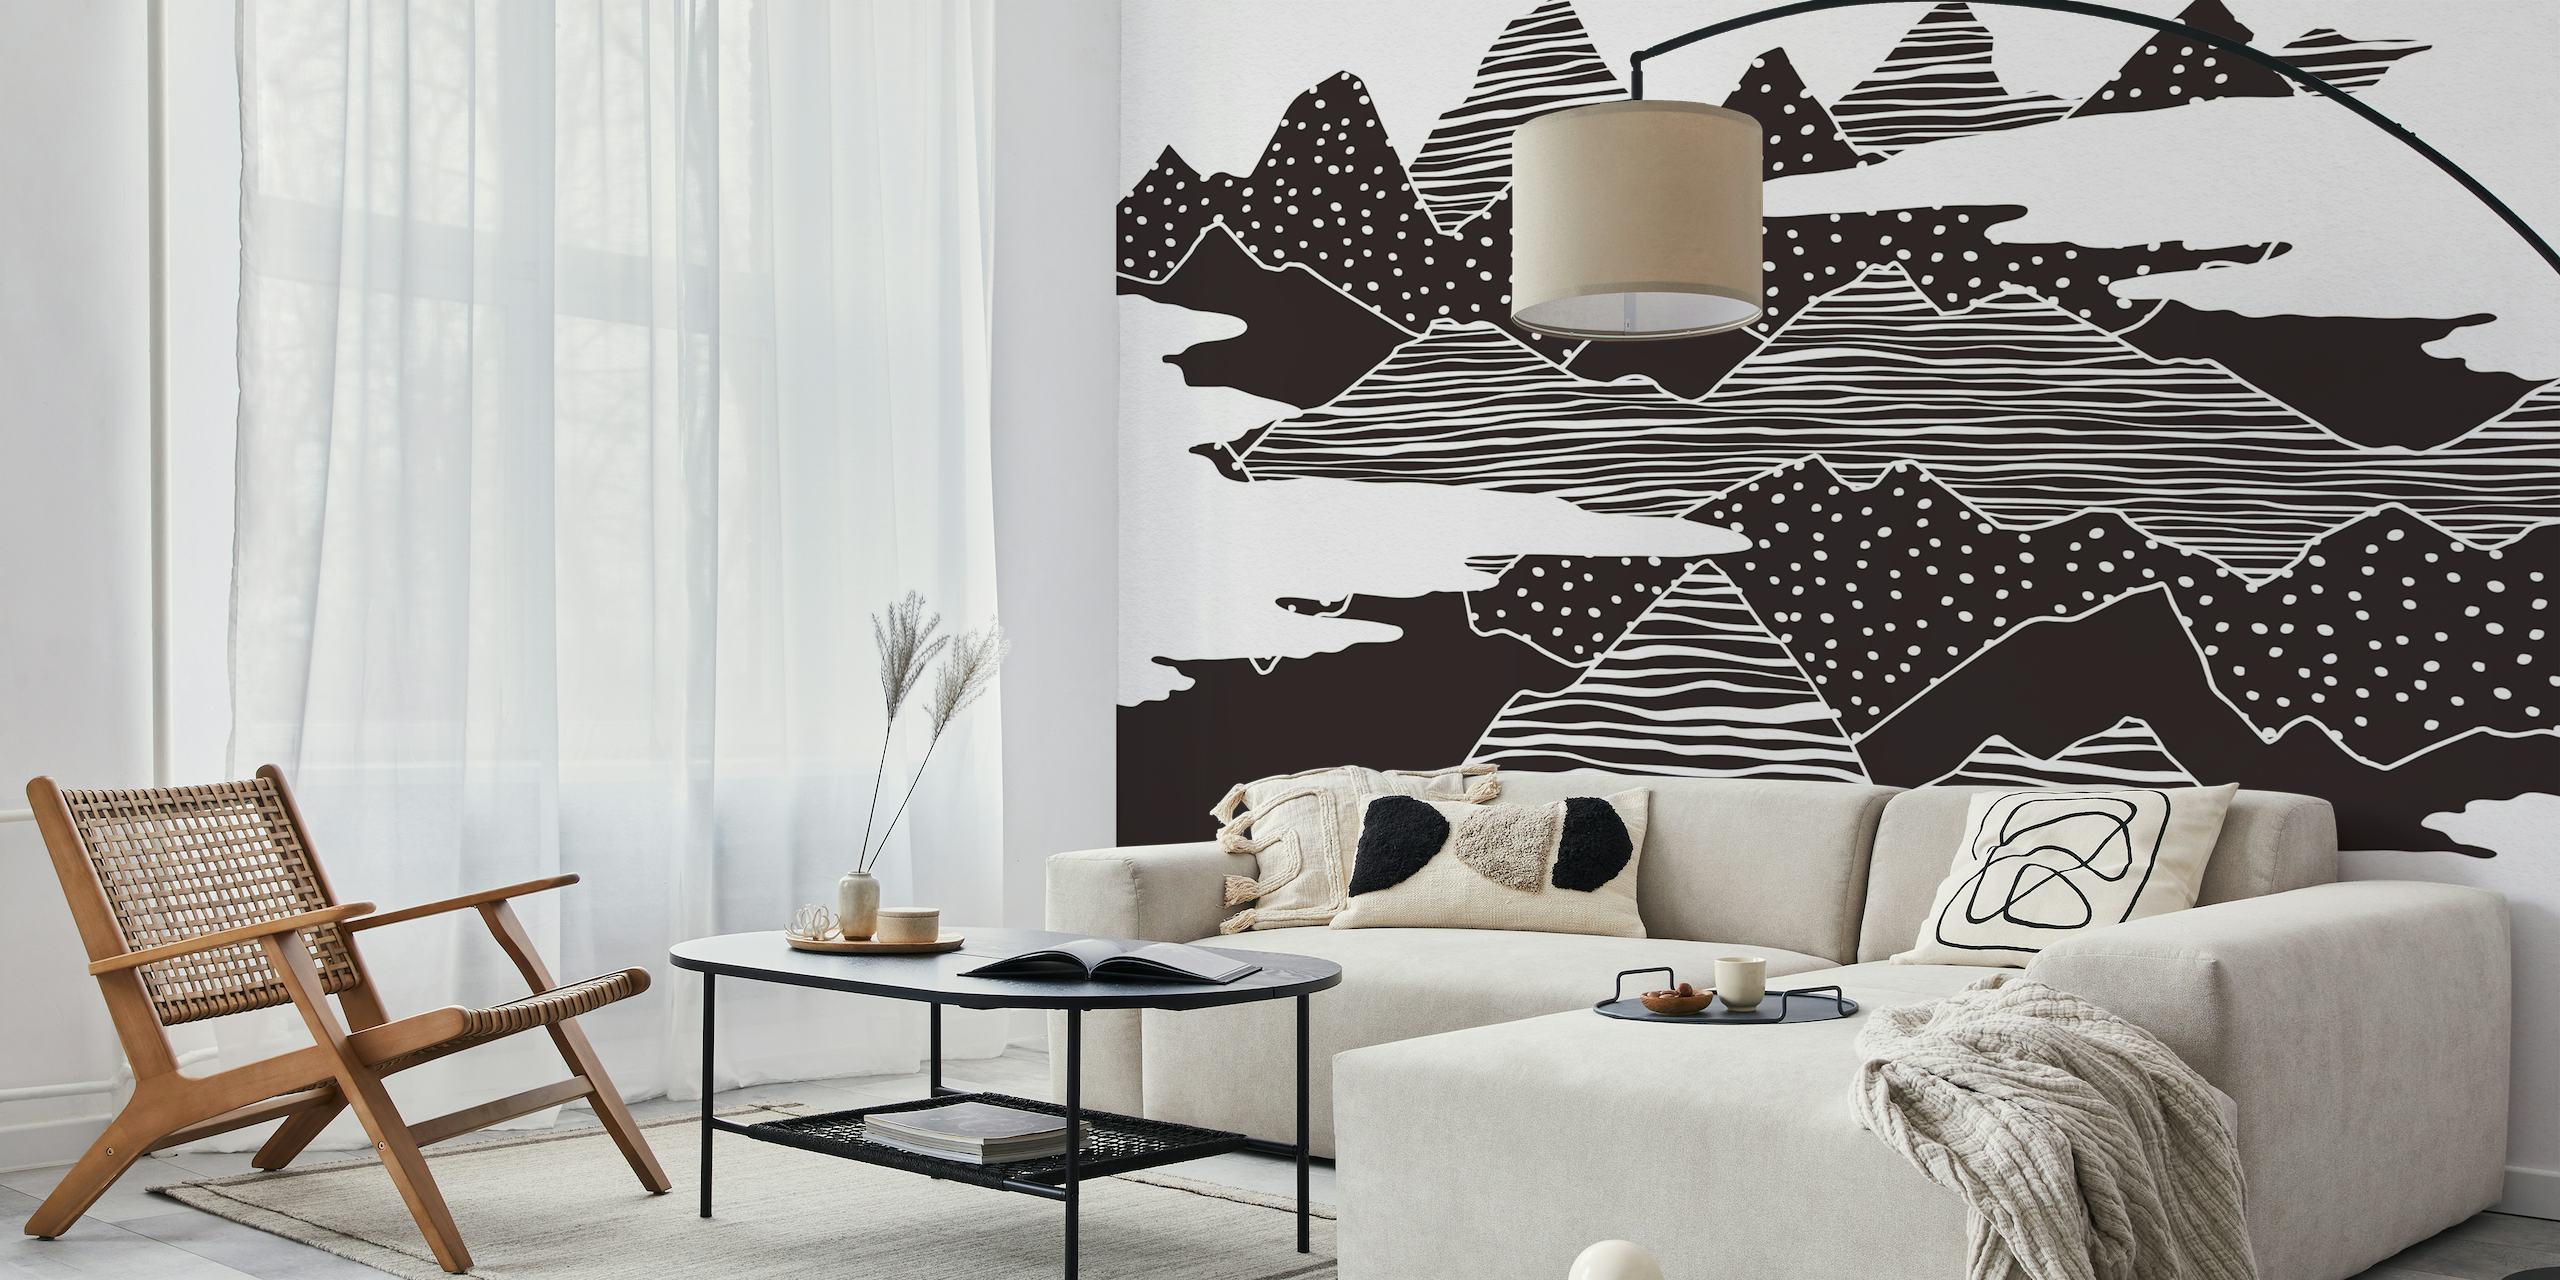 Abstraktes schwarz-weißes Wandgemälde stilisierter Berggipfel mit gepunkteten Texturen